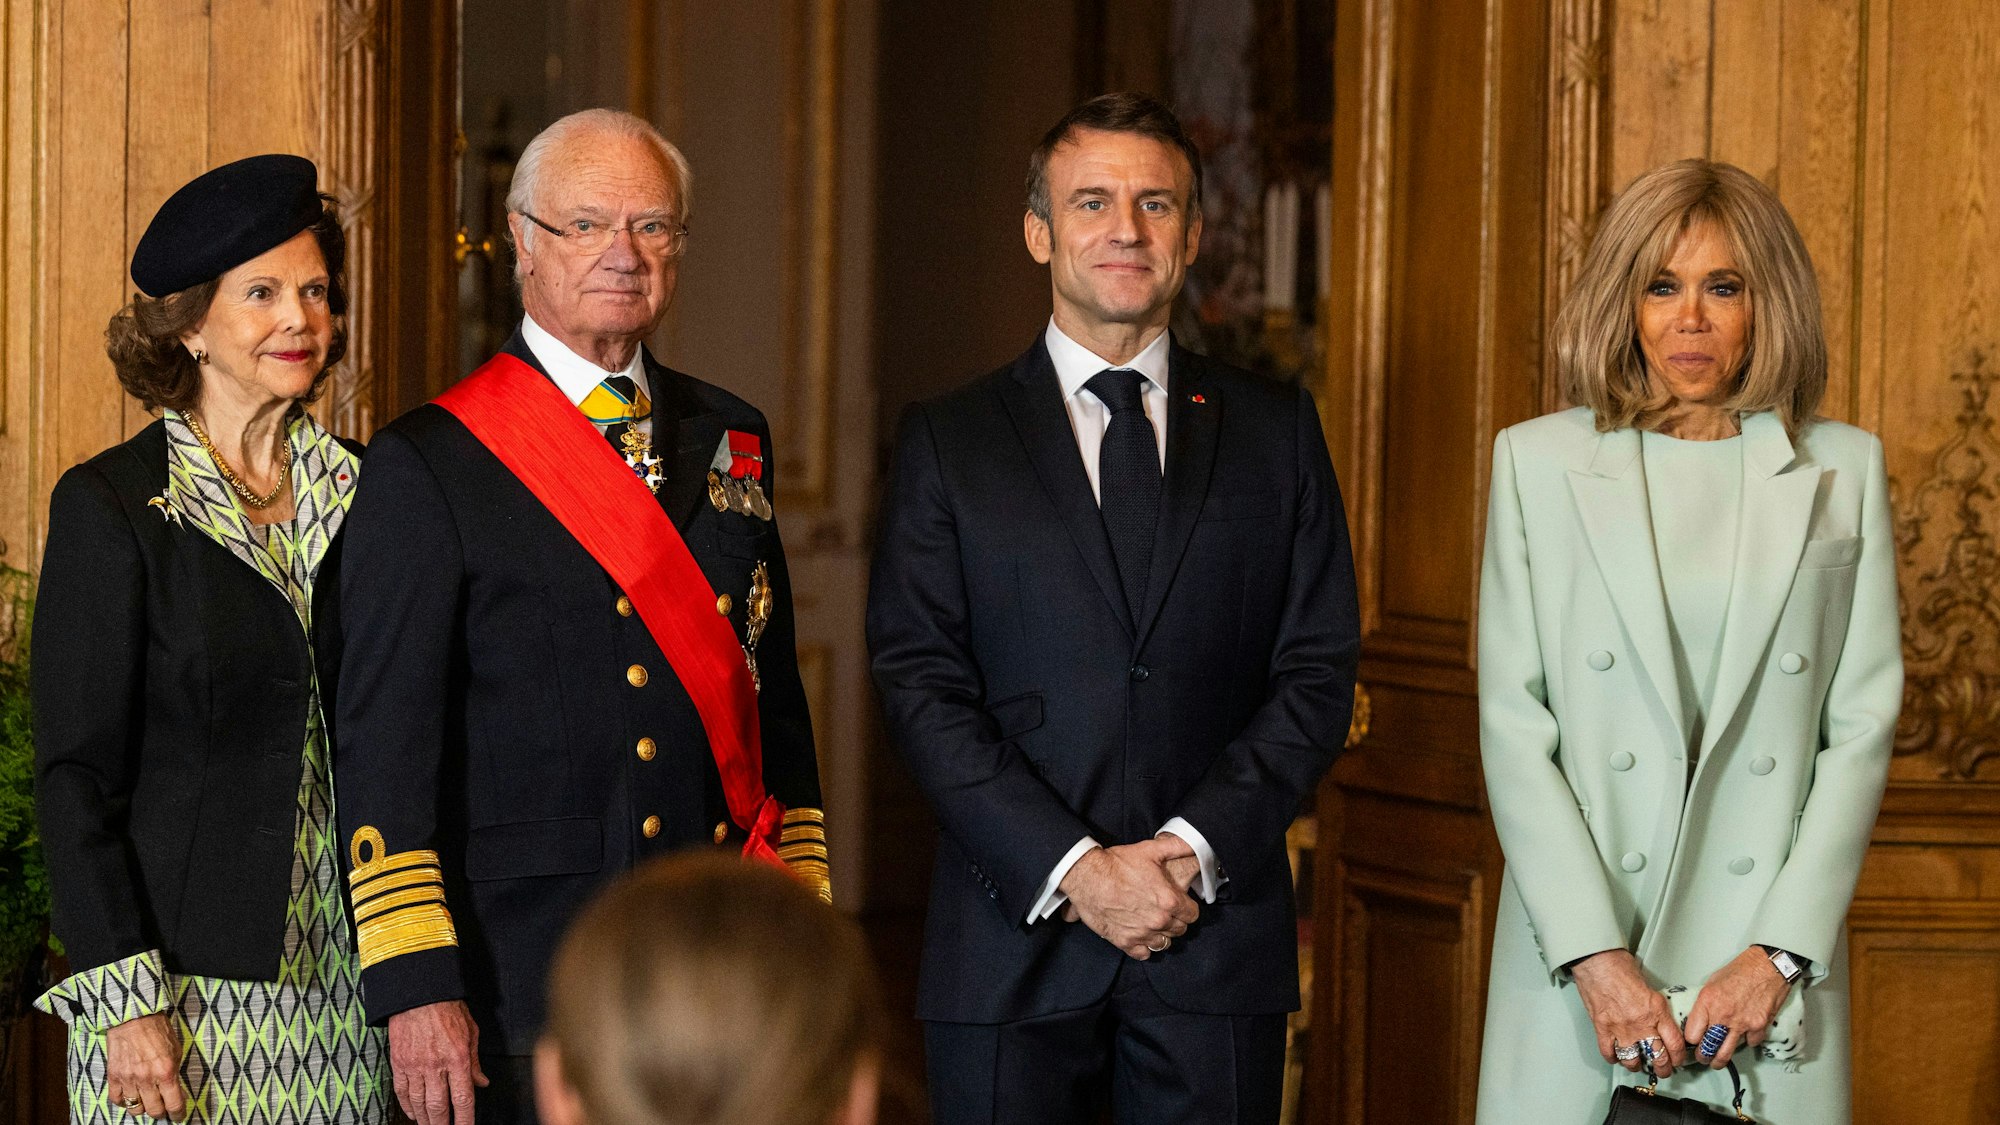 Königin Silvia und König Carl XVI. Gustaf posieren für ein Foto mit Frankreichs Präsident Emmanuel Macron und seiner Frau Brigitte Macron nach einer Presseerklärung im Stockholmer Schloss.